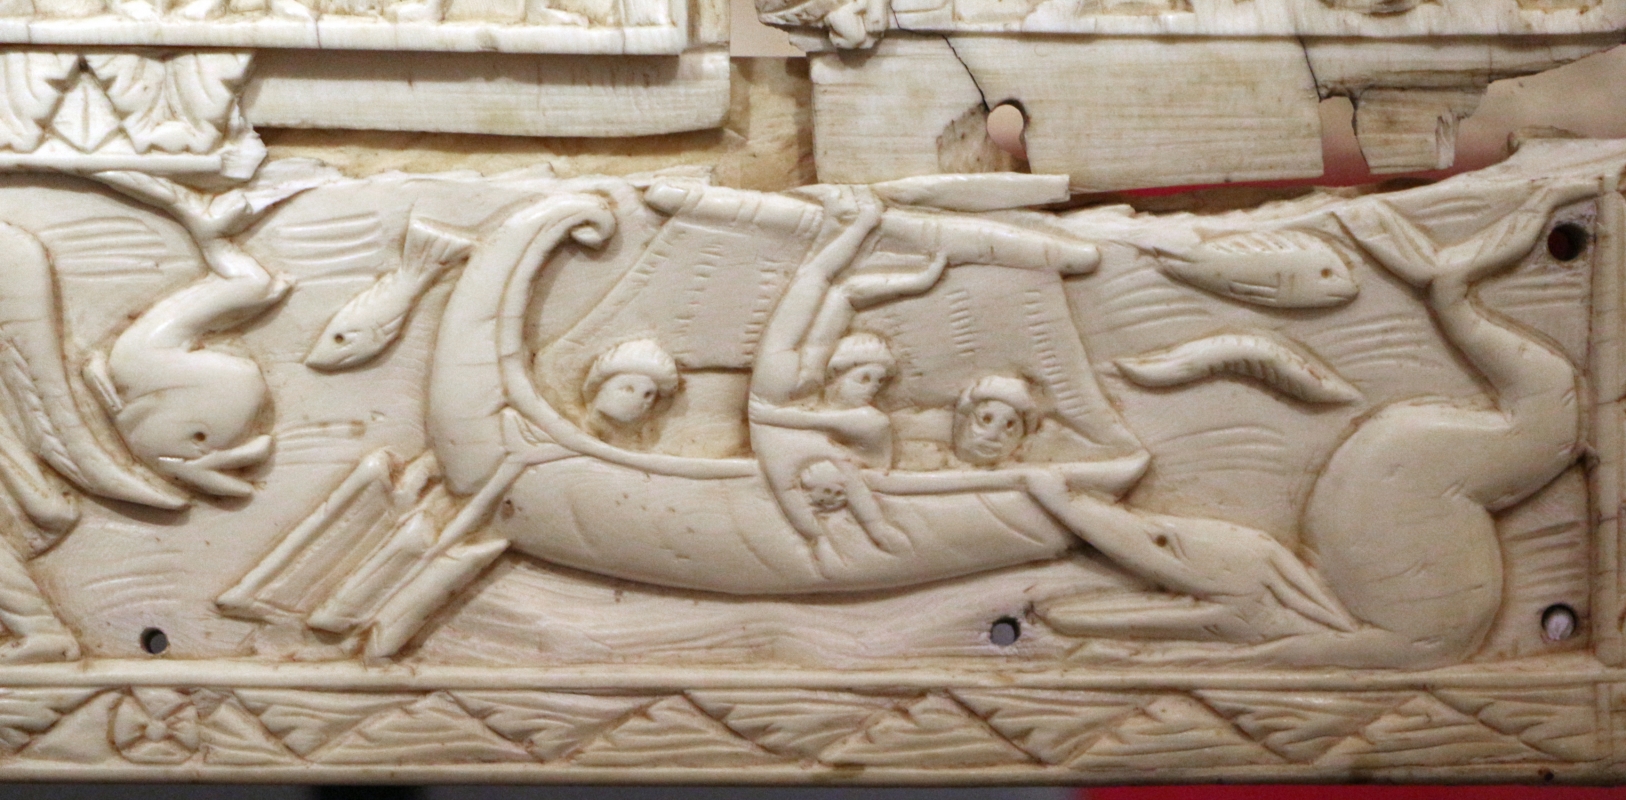 Fattura forse egiziana, coperta di evangeliario detta dittico di murano, avorio, 500-550 ca. 04 giona gettato in mare - Sailko